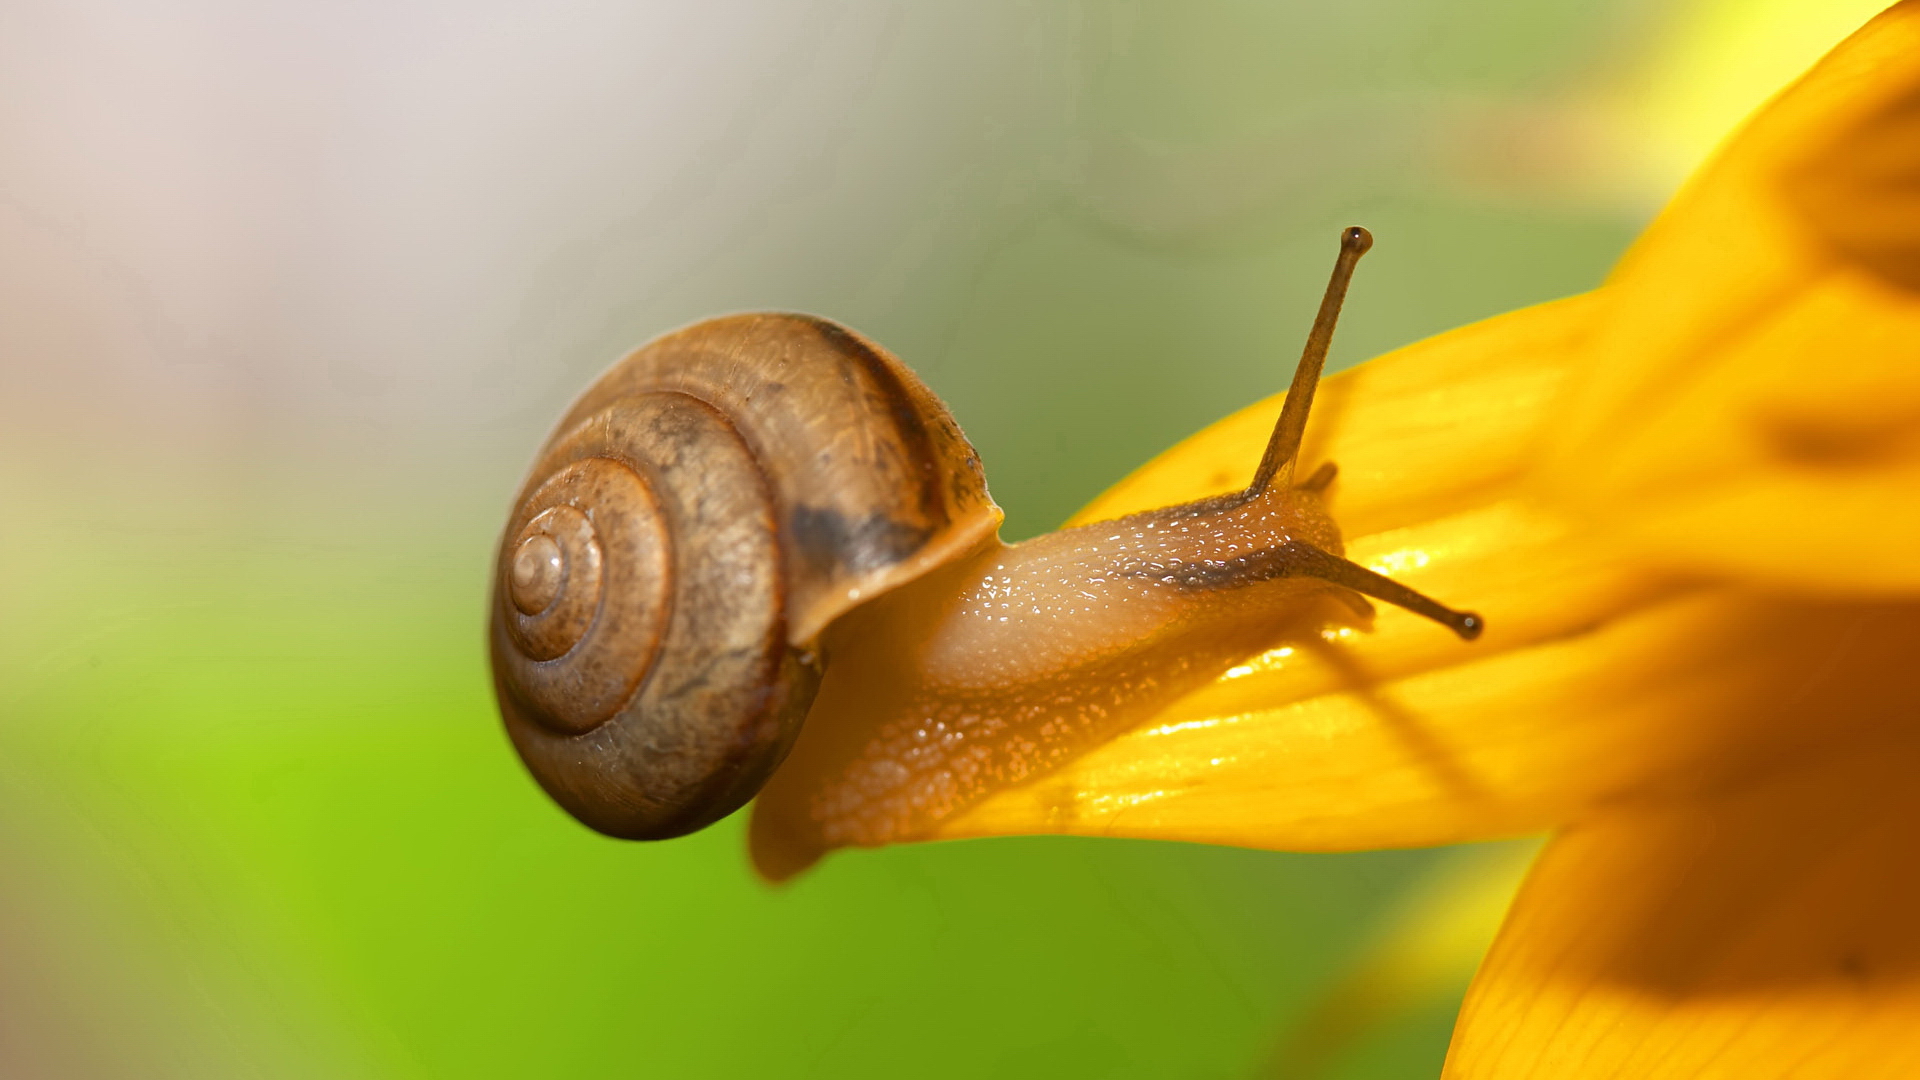 snails, molluscs - desktop wallpaper